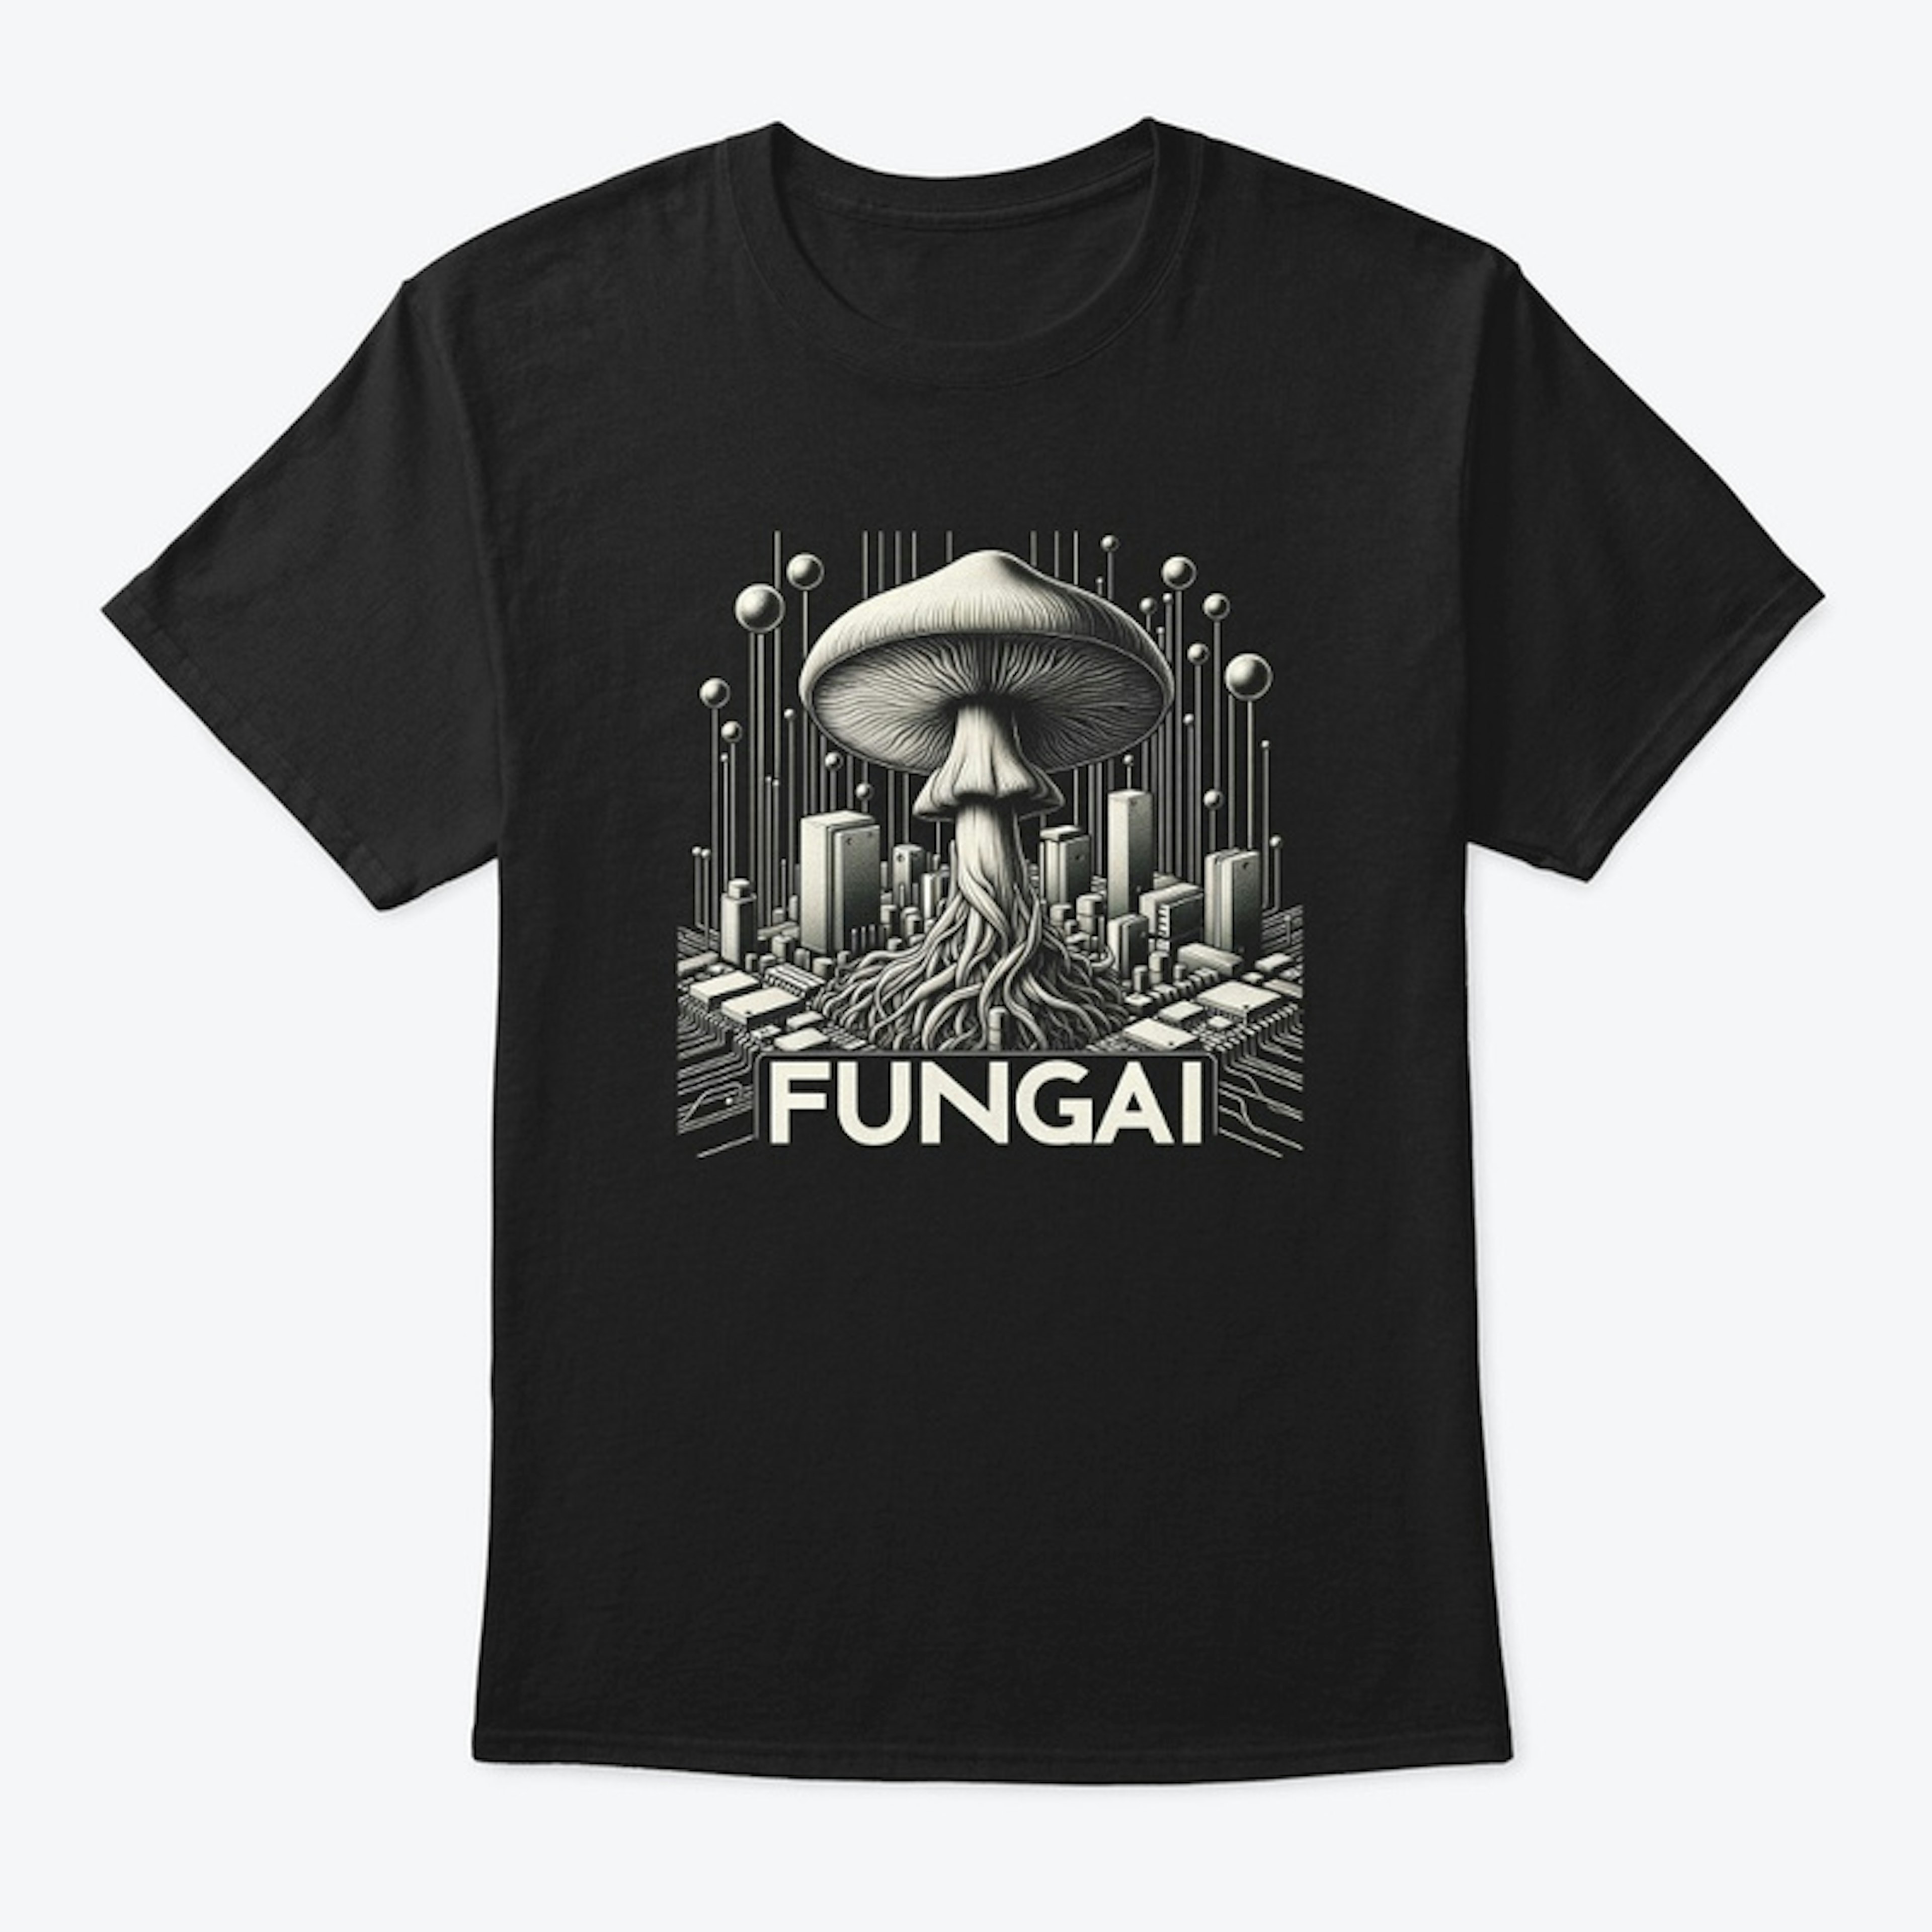 The Future is FungAI